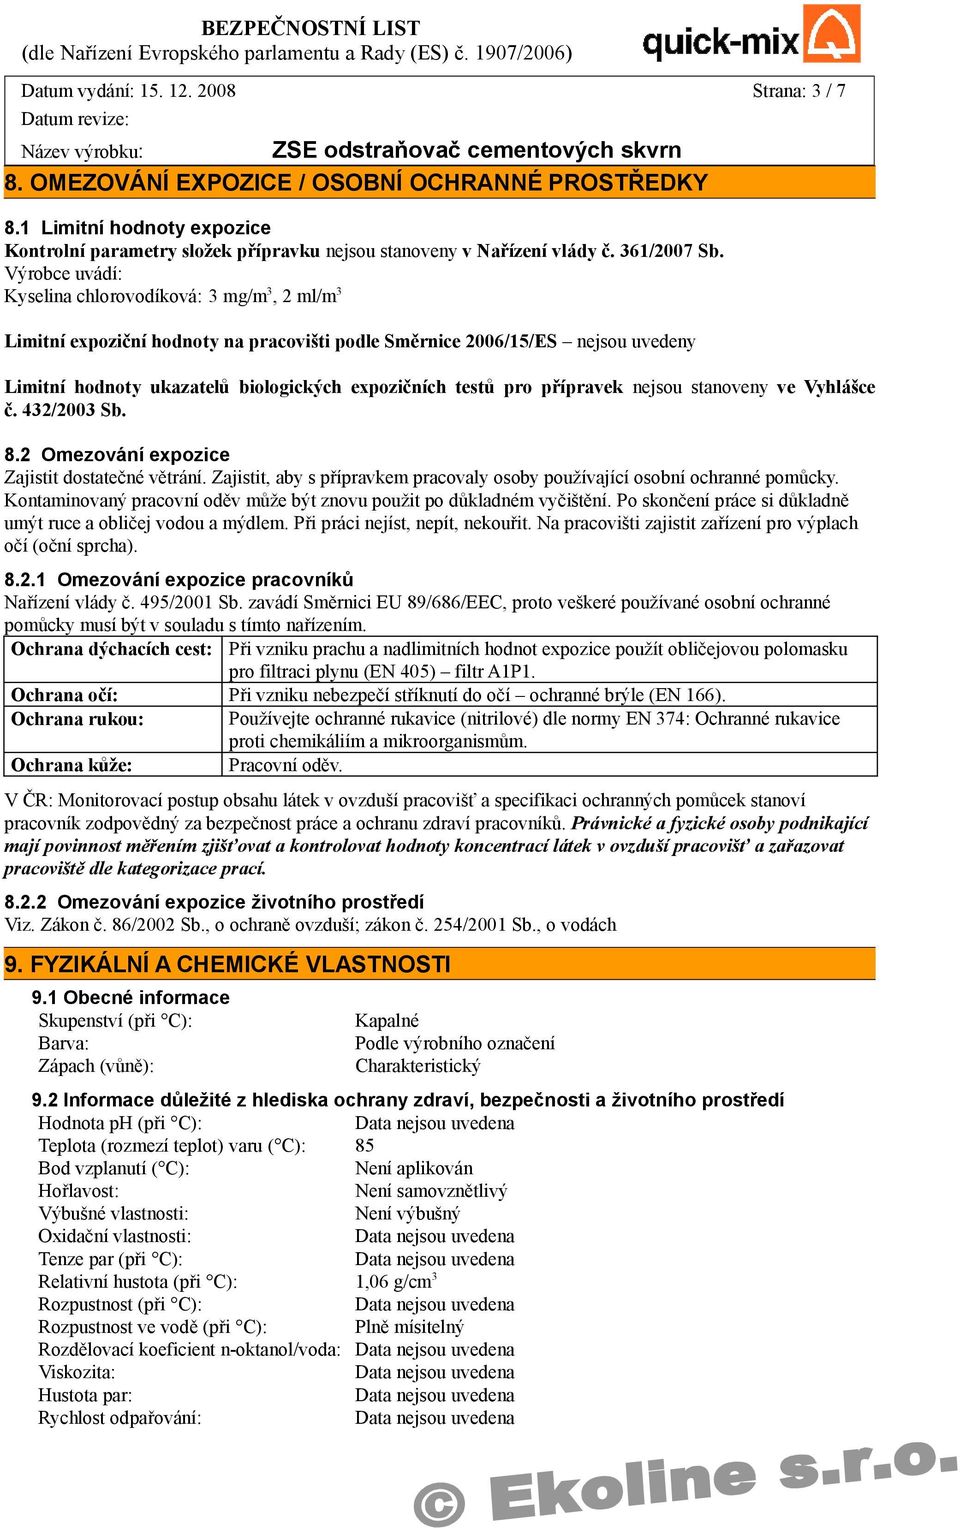 Výrobce uvádí: Kyselina chlorovodíková: 3 mg/m 3, 2 ml/m 3 Limitní expoziční hodnoty na pracovišti podle Směrnice 2006/15/ES nejsou uvedeny Limitní hodnoty ukazatelů biologických expozičních testů